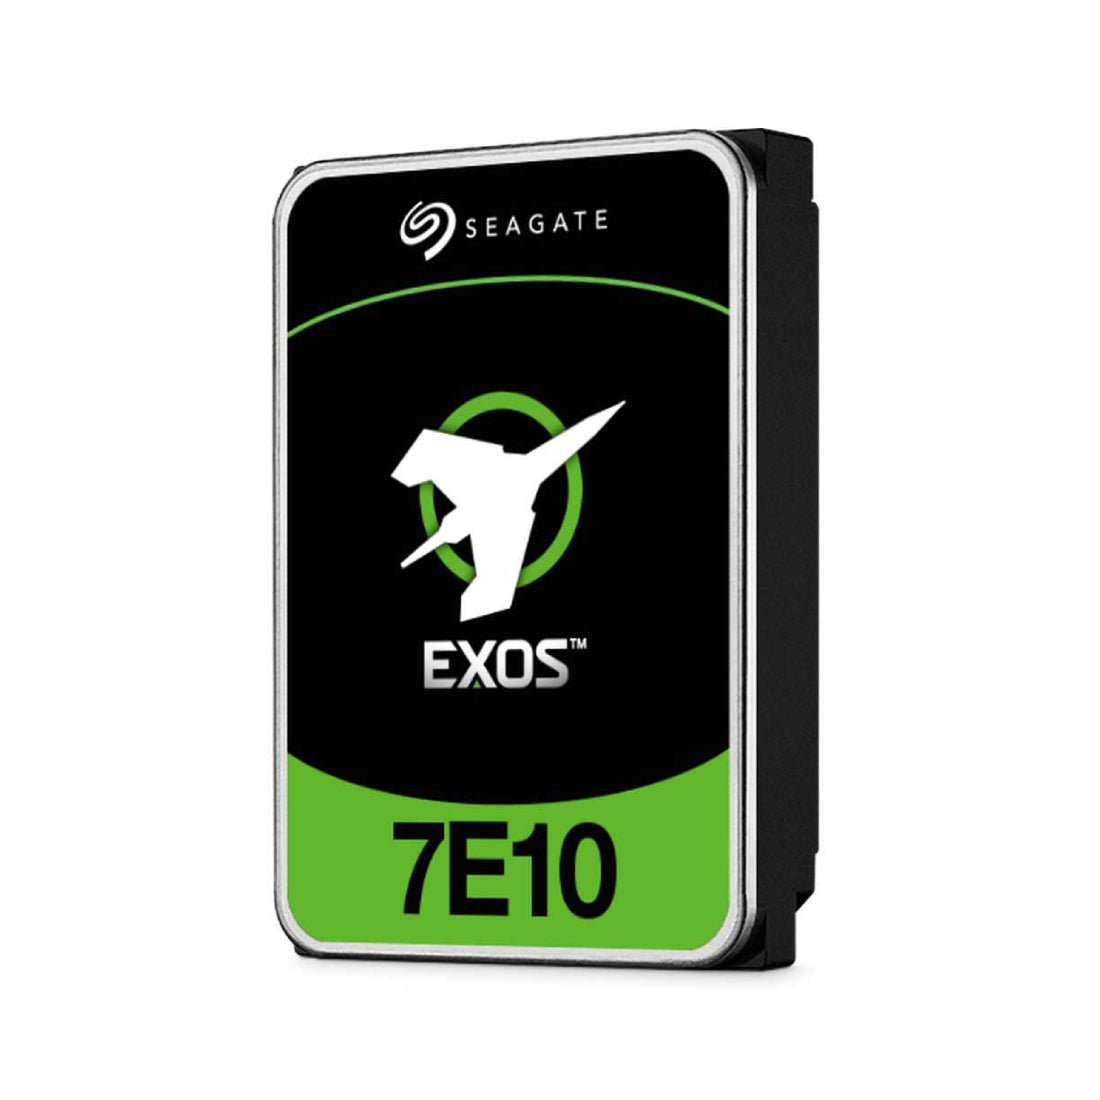 Seagate Exos 7E10 10TB 7200 RPM SATA 6Gb/s 3.5-Inch Enterprise Hard Drive - مساحة تخزين - Store 974 | ستور ٩٧٤